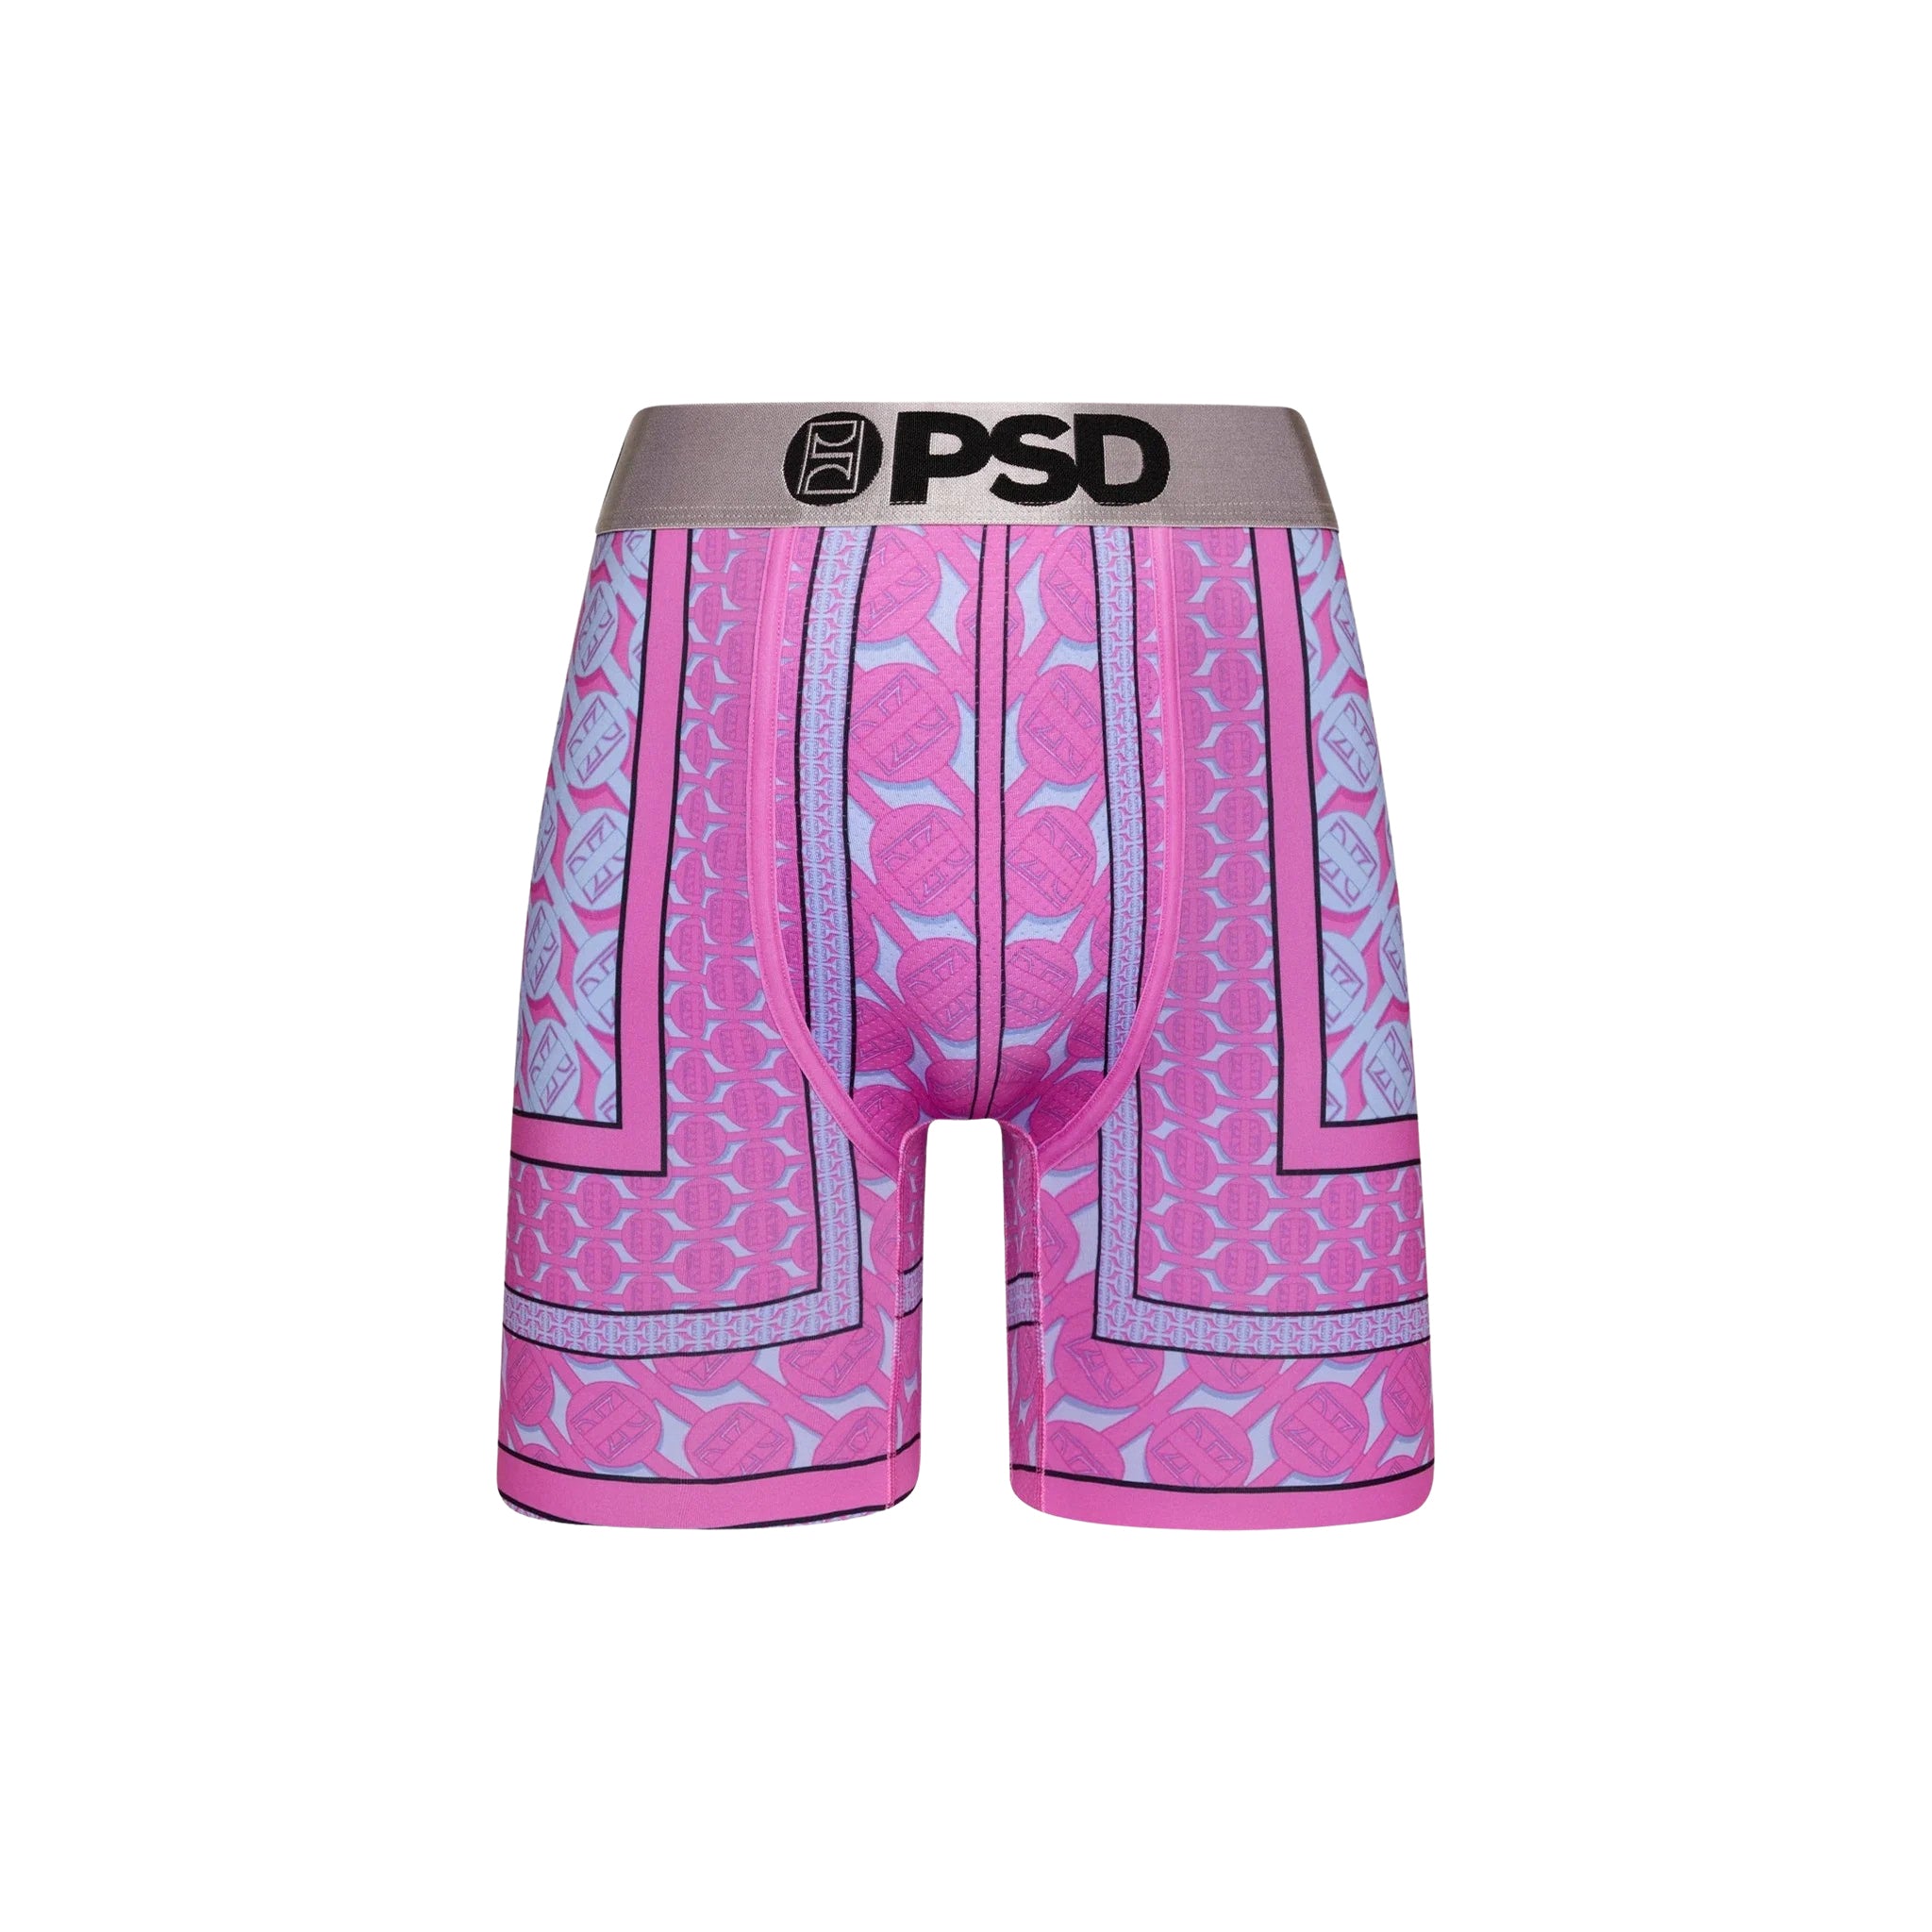 PSD "Maze" Underwear